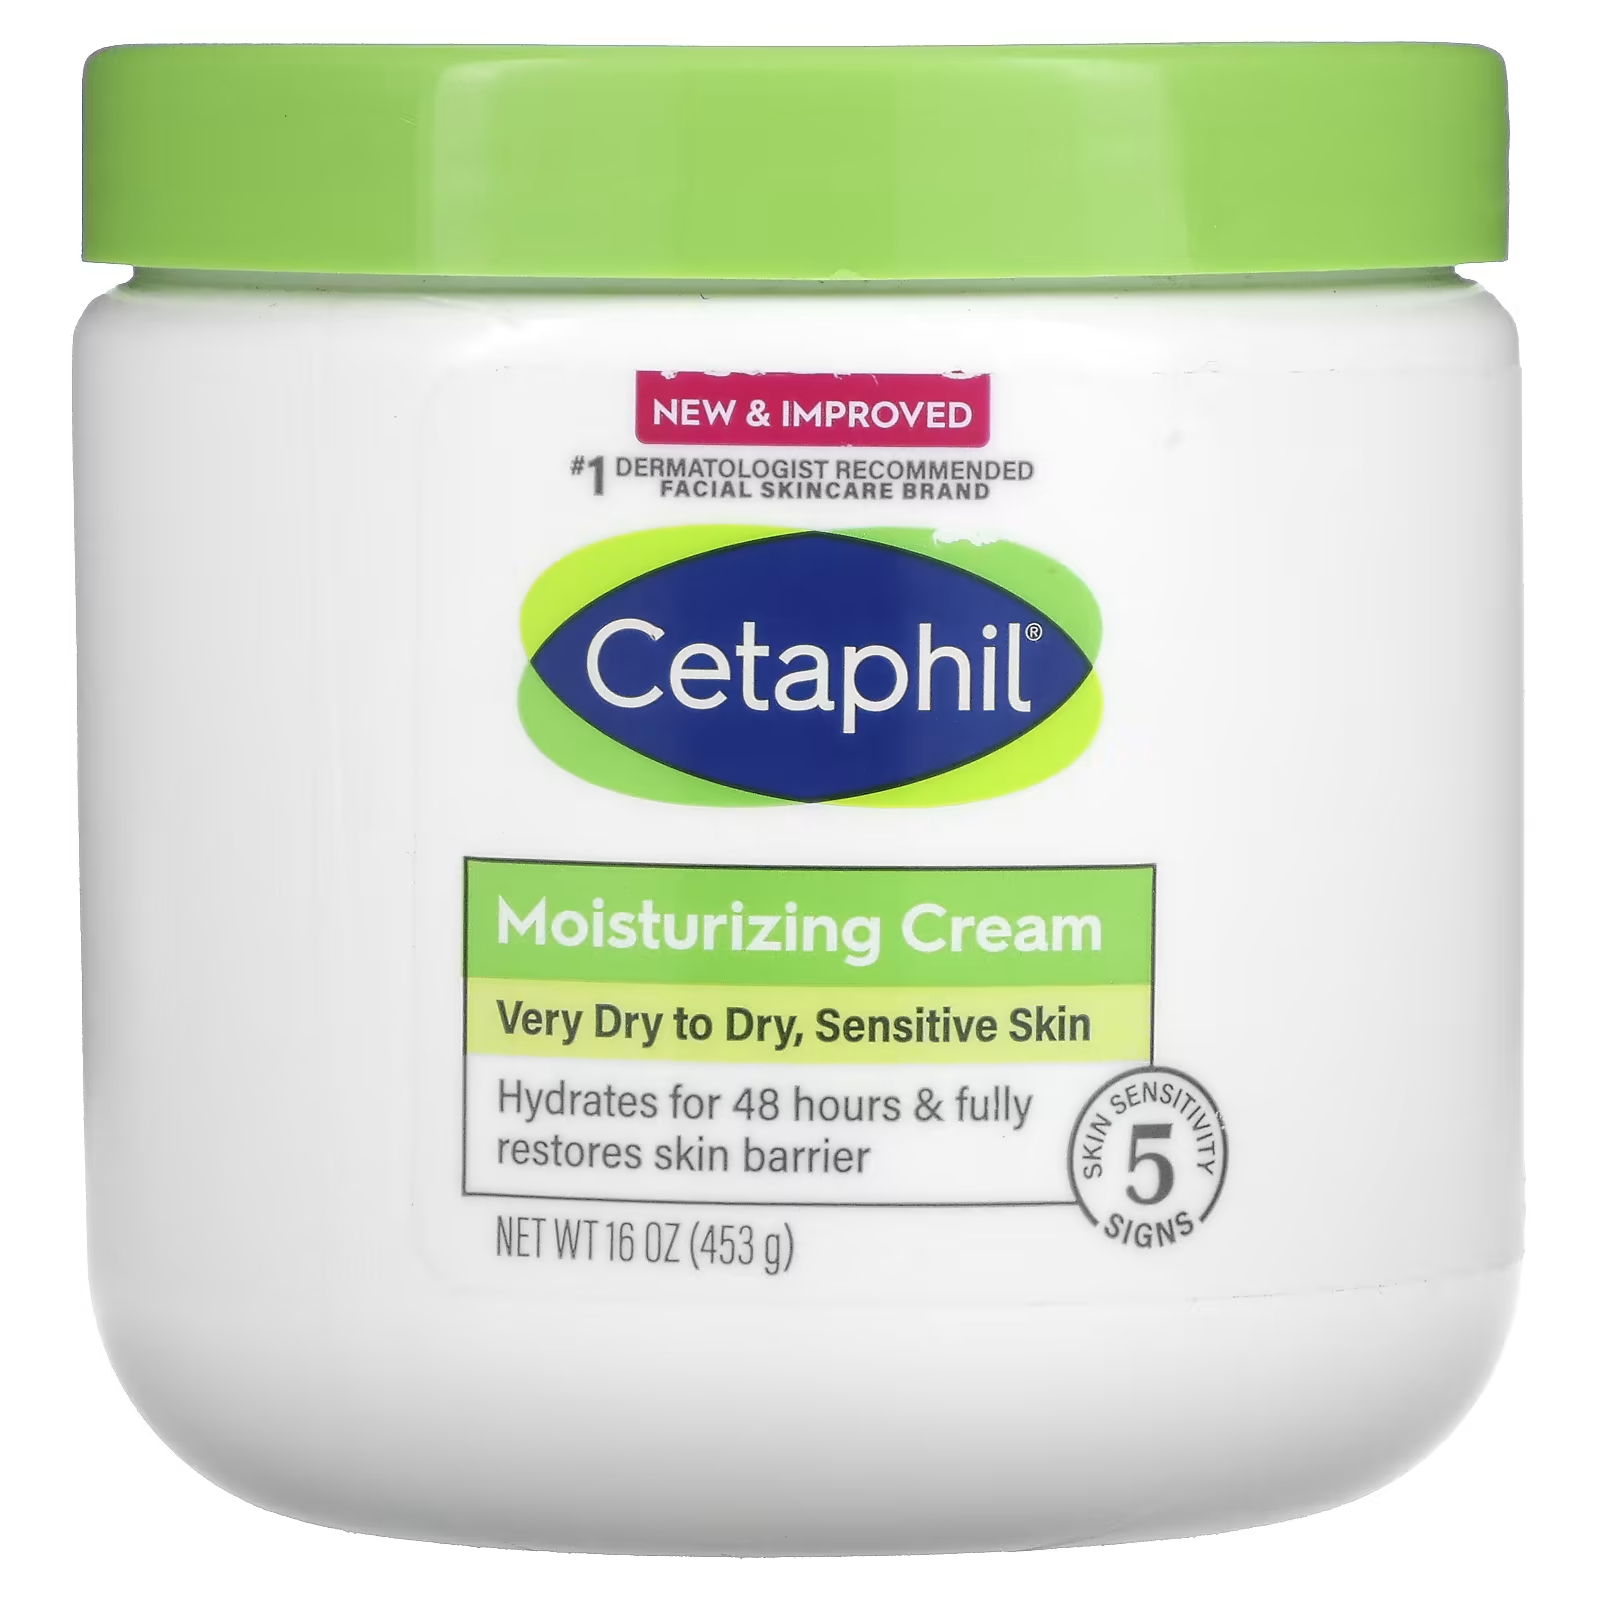 Увлажняющий крем Cetaphil без ароматизаторов, 16 унций (453 г) cetaphil увлажняющий крем для очень сухой и сухой для чувствительной кожи 453 г 16 унций